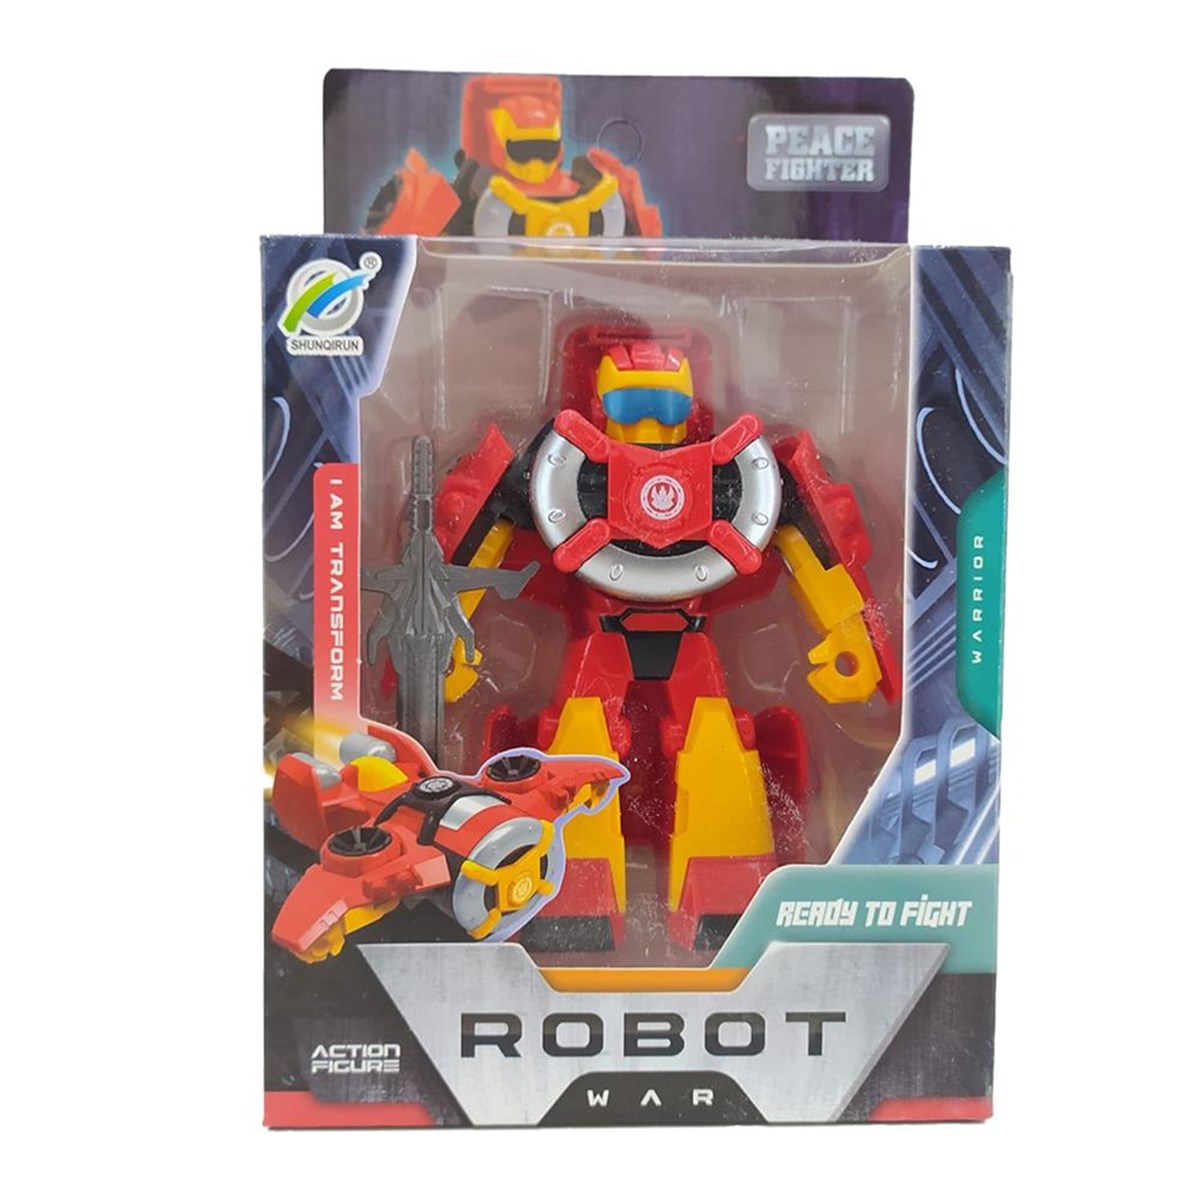 Peace Fighter Robot War Dönüşen Robot, Alışverişin Adresi'nde | Shopiglo